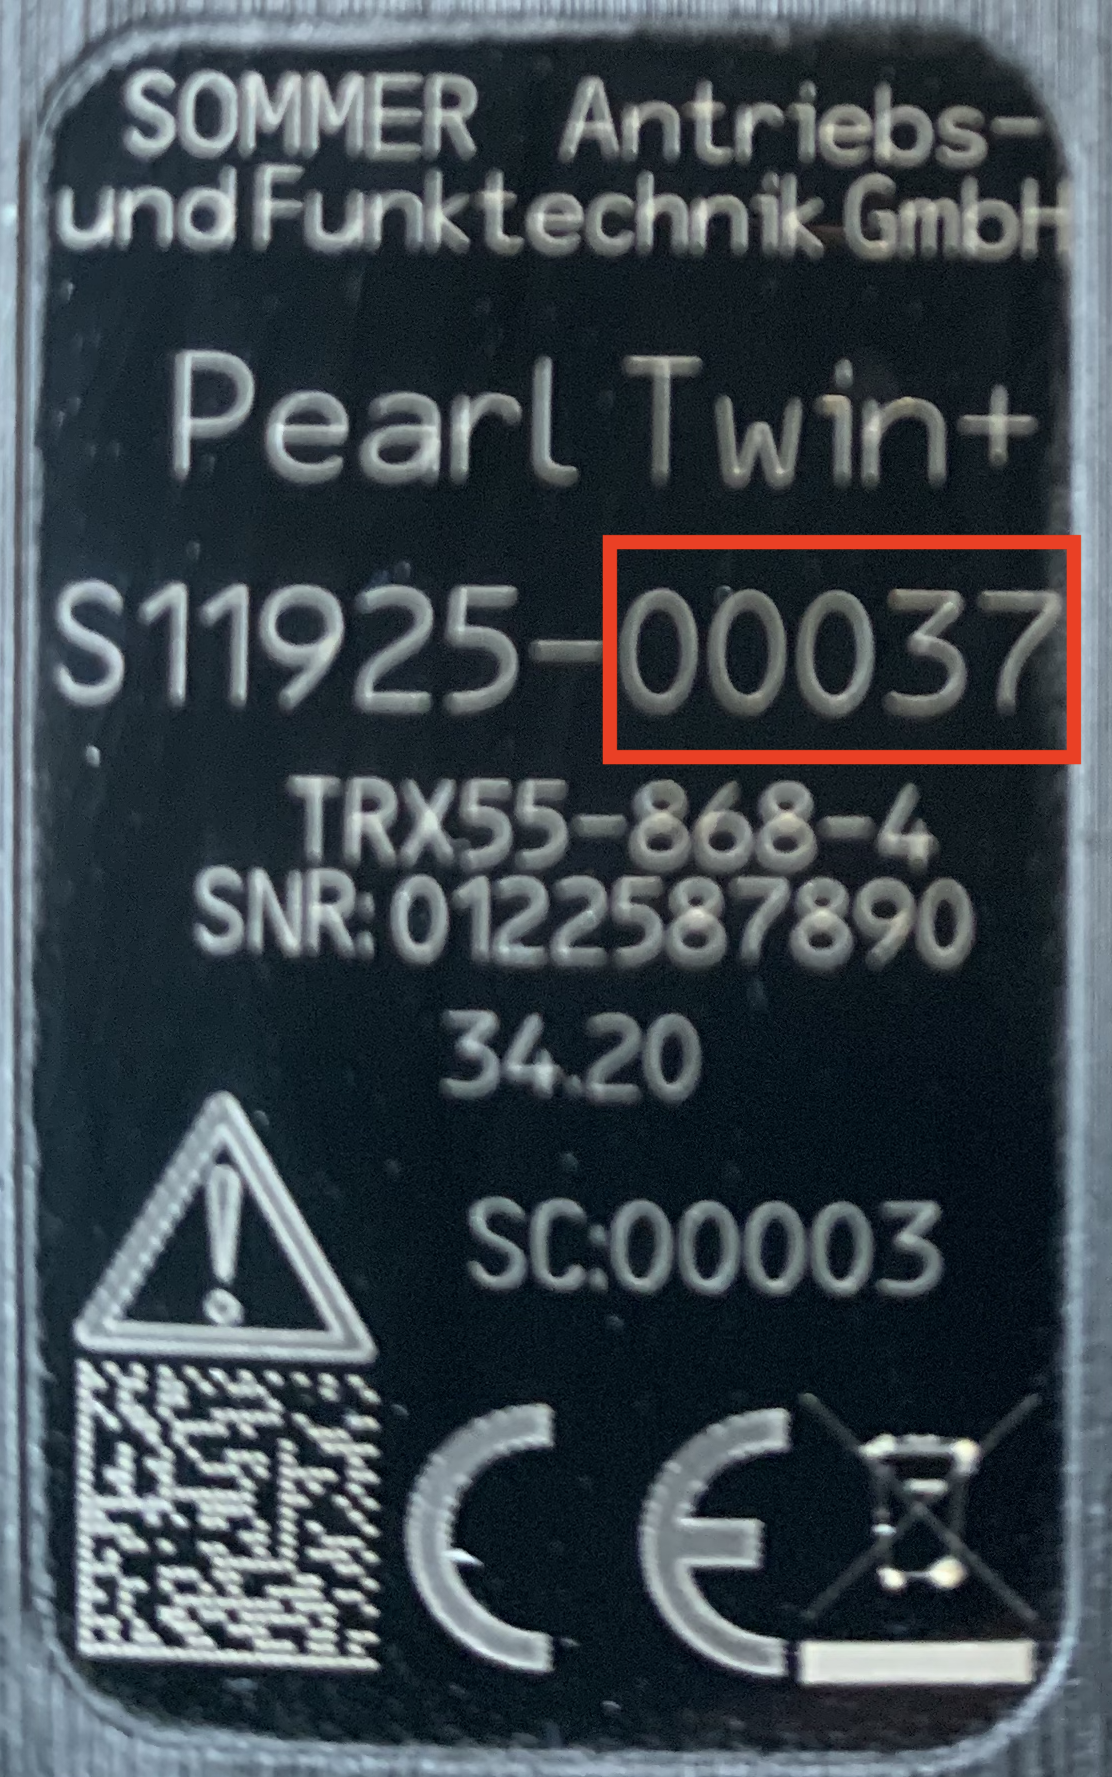 Pear Twin+ RegioCode